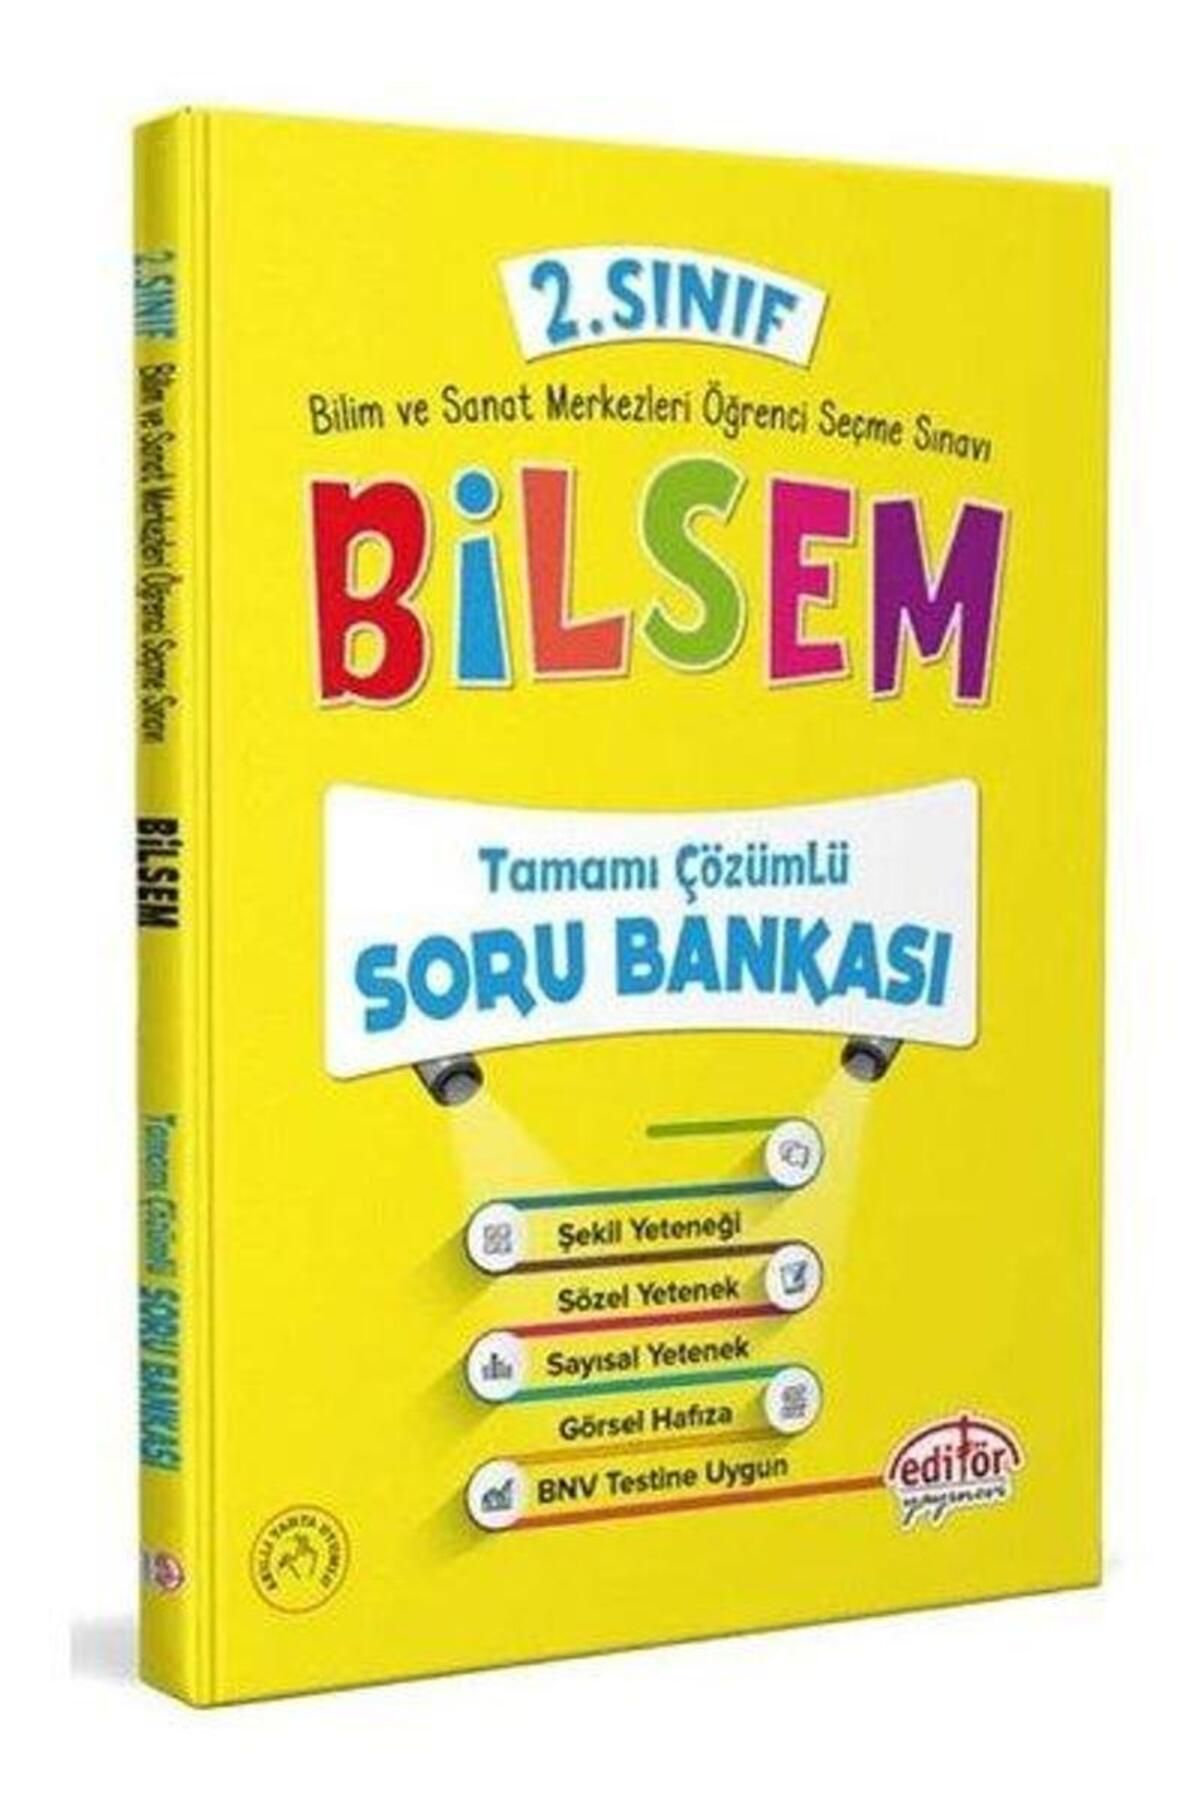 Editör Yayınları 2.Sınıf Bilsem Tamamı Çözümlü Soru Bankası